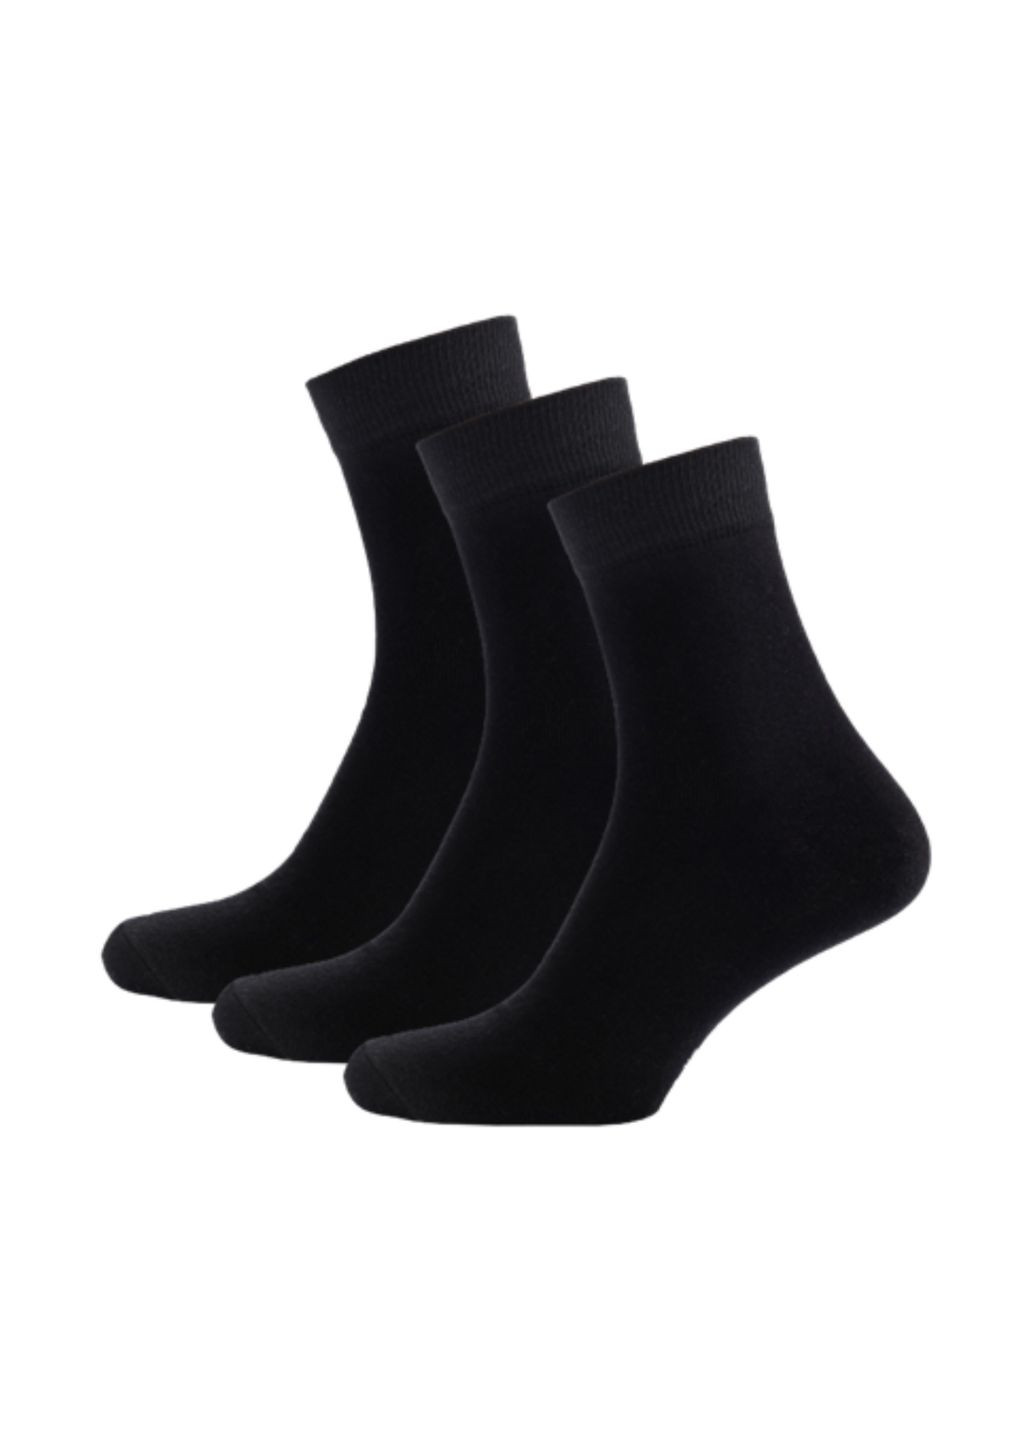 .Набор (3 шт) классических мужских носков W999 Wola w999_набір (285277388)